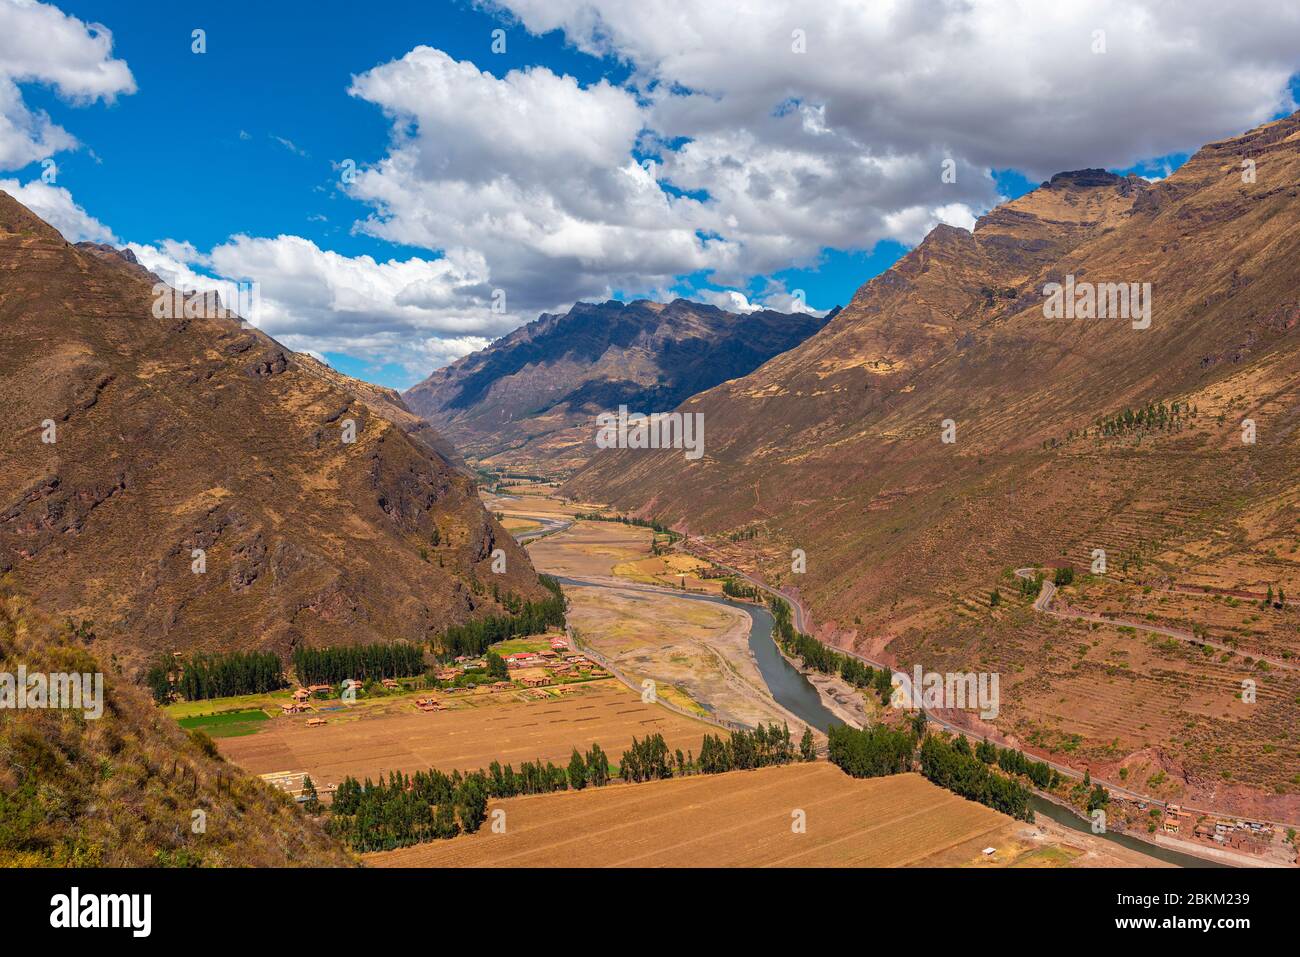 Paysage de la Vallée Sacrée de l'Inca avec le fleuve Urubamba et la chaîne de montagnes des Andes, Pisac, province de Cusco, Pérou. Banque D'Images